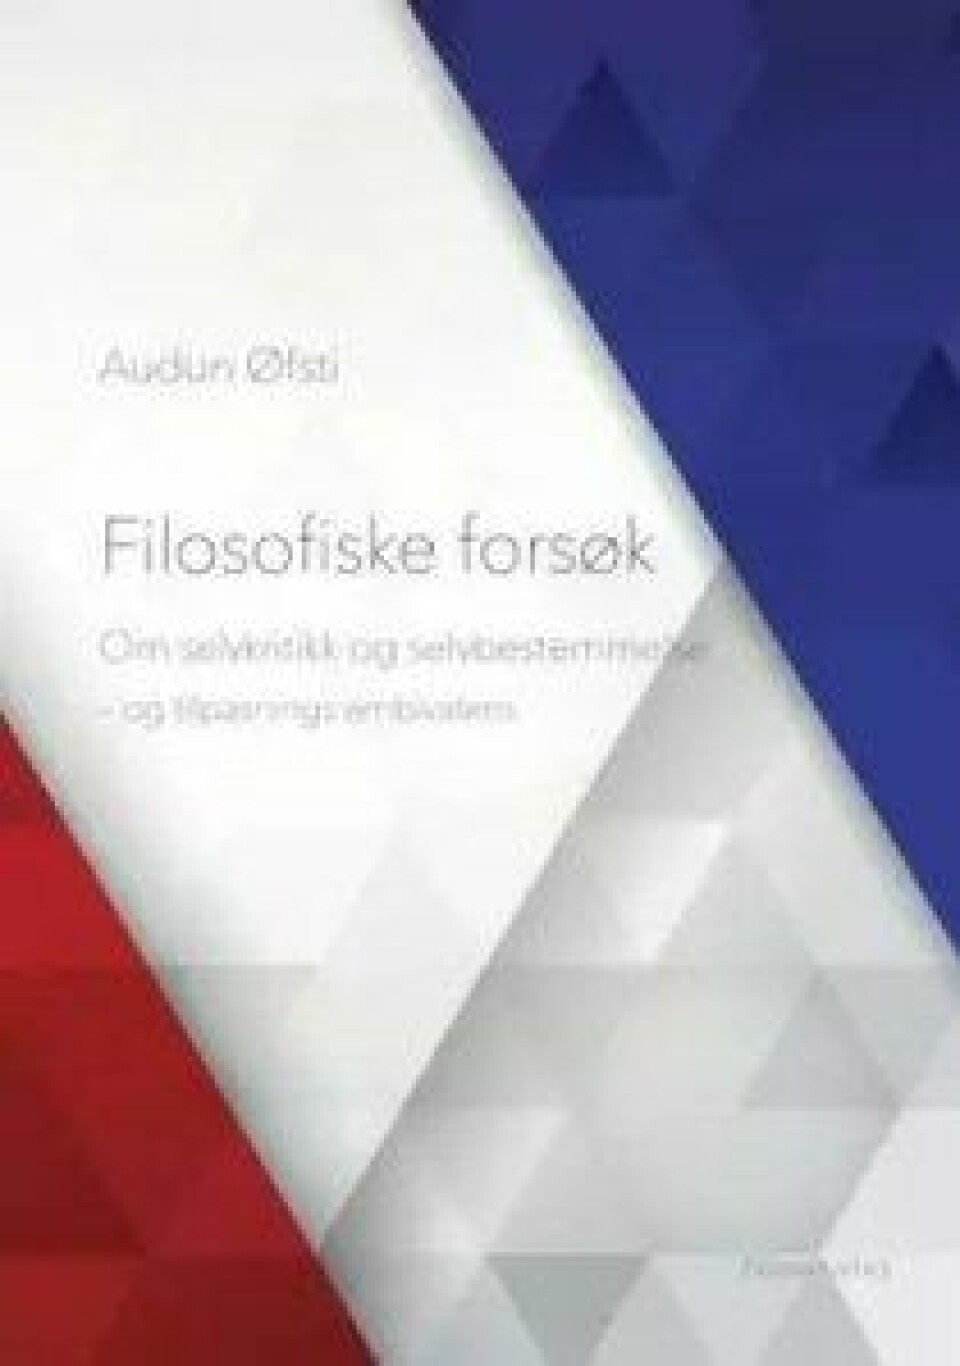 Filosofiske forsøk av Audun Øfsti, Novus forlag 2017.